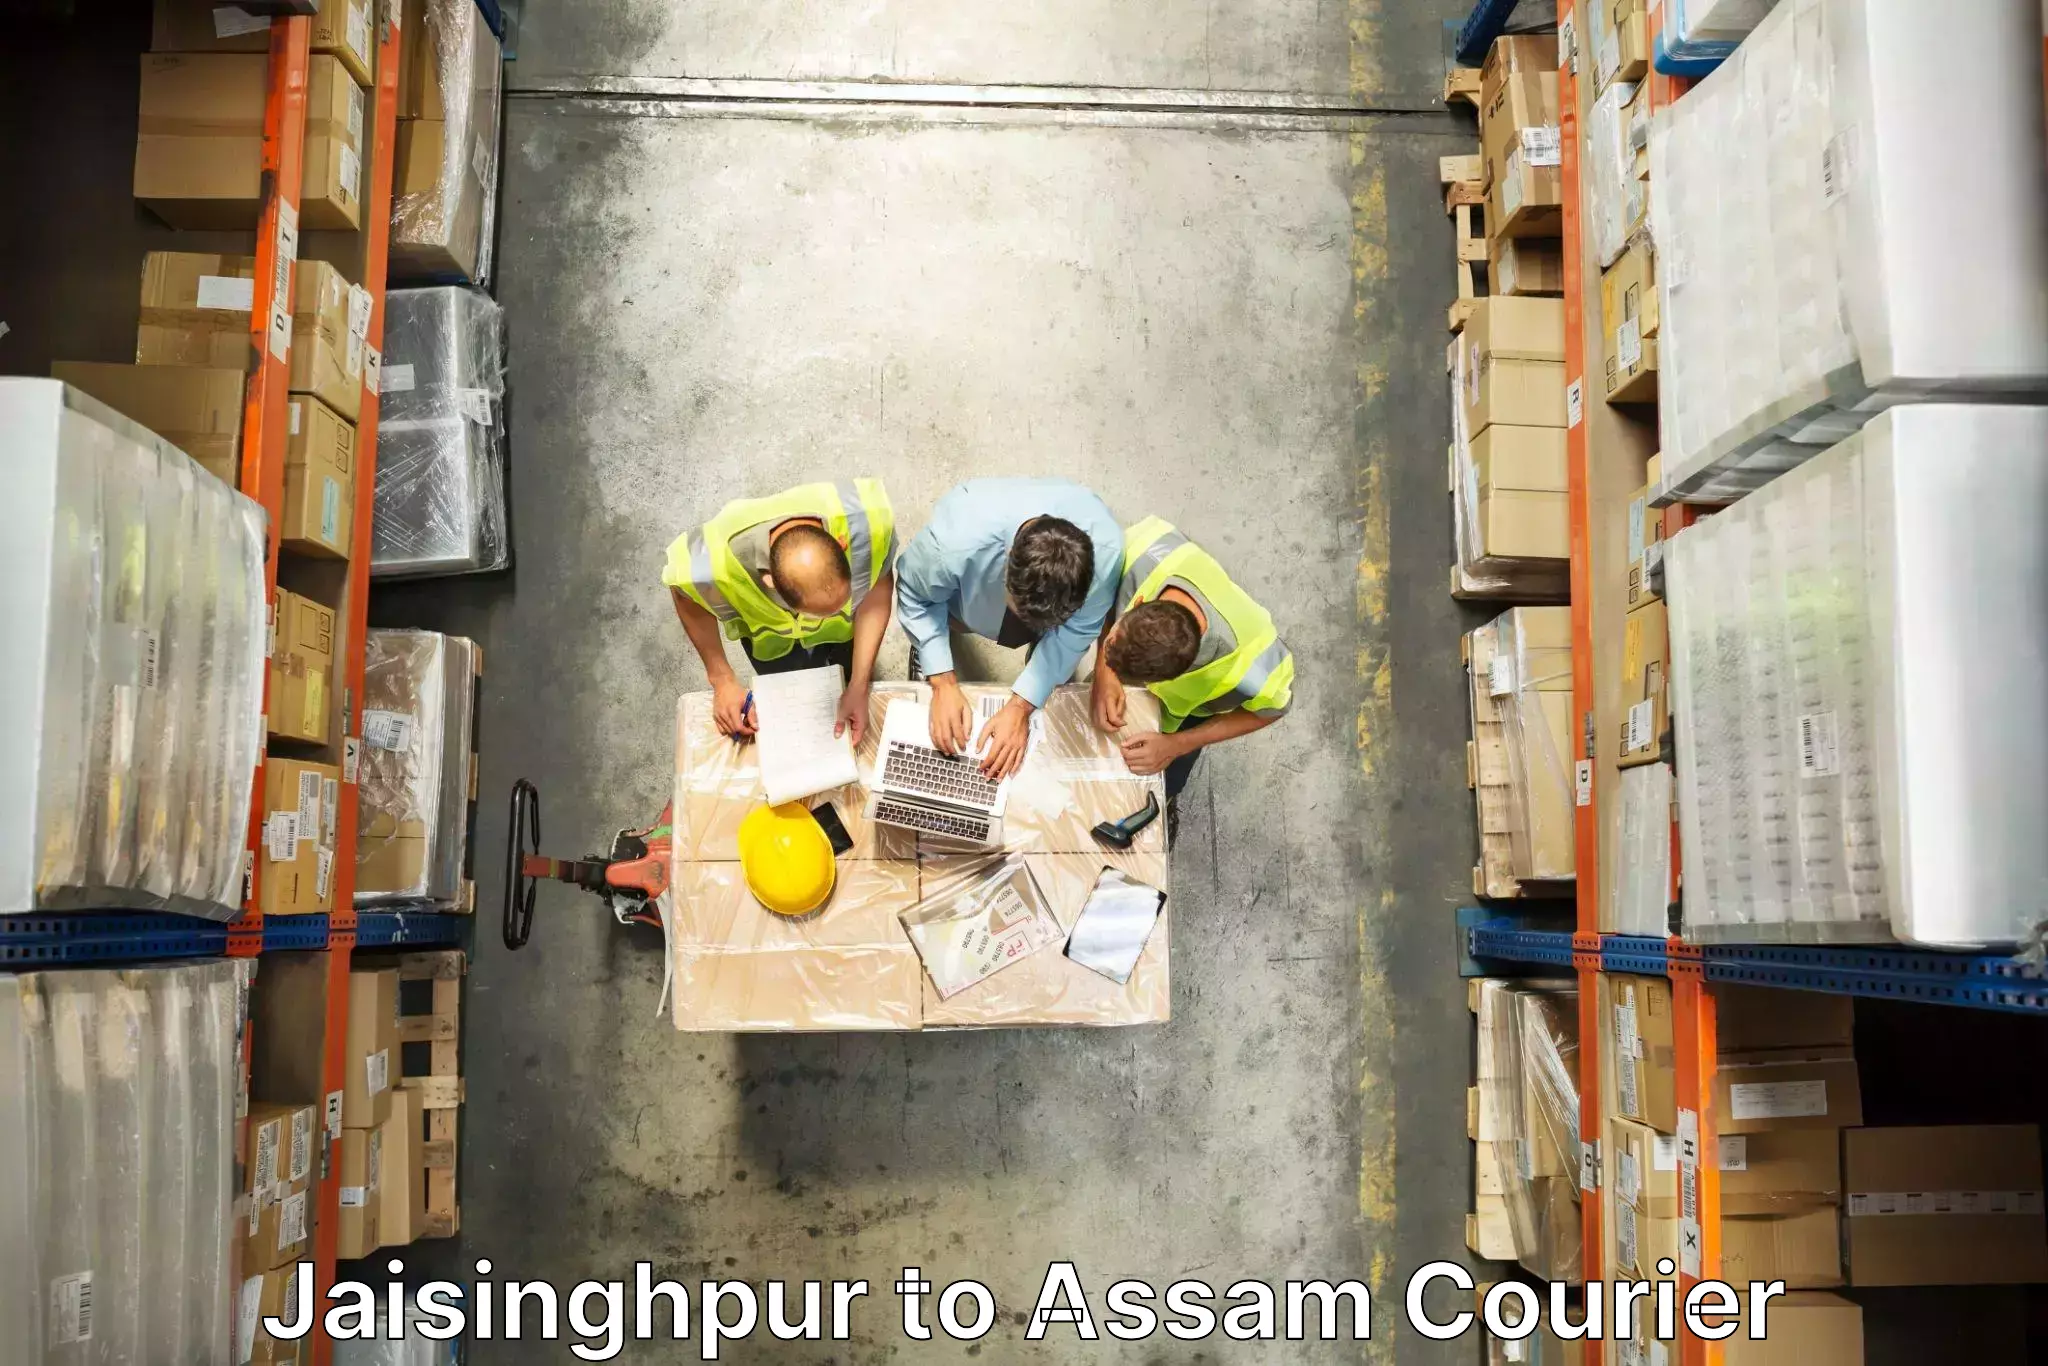 Professional furniture movers Jaisinghpur to Kalgachia